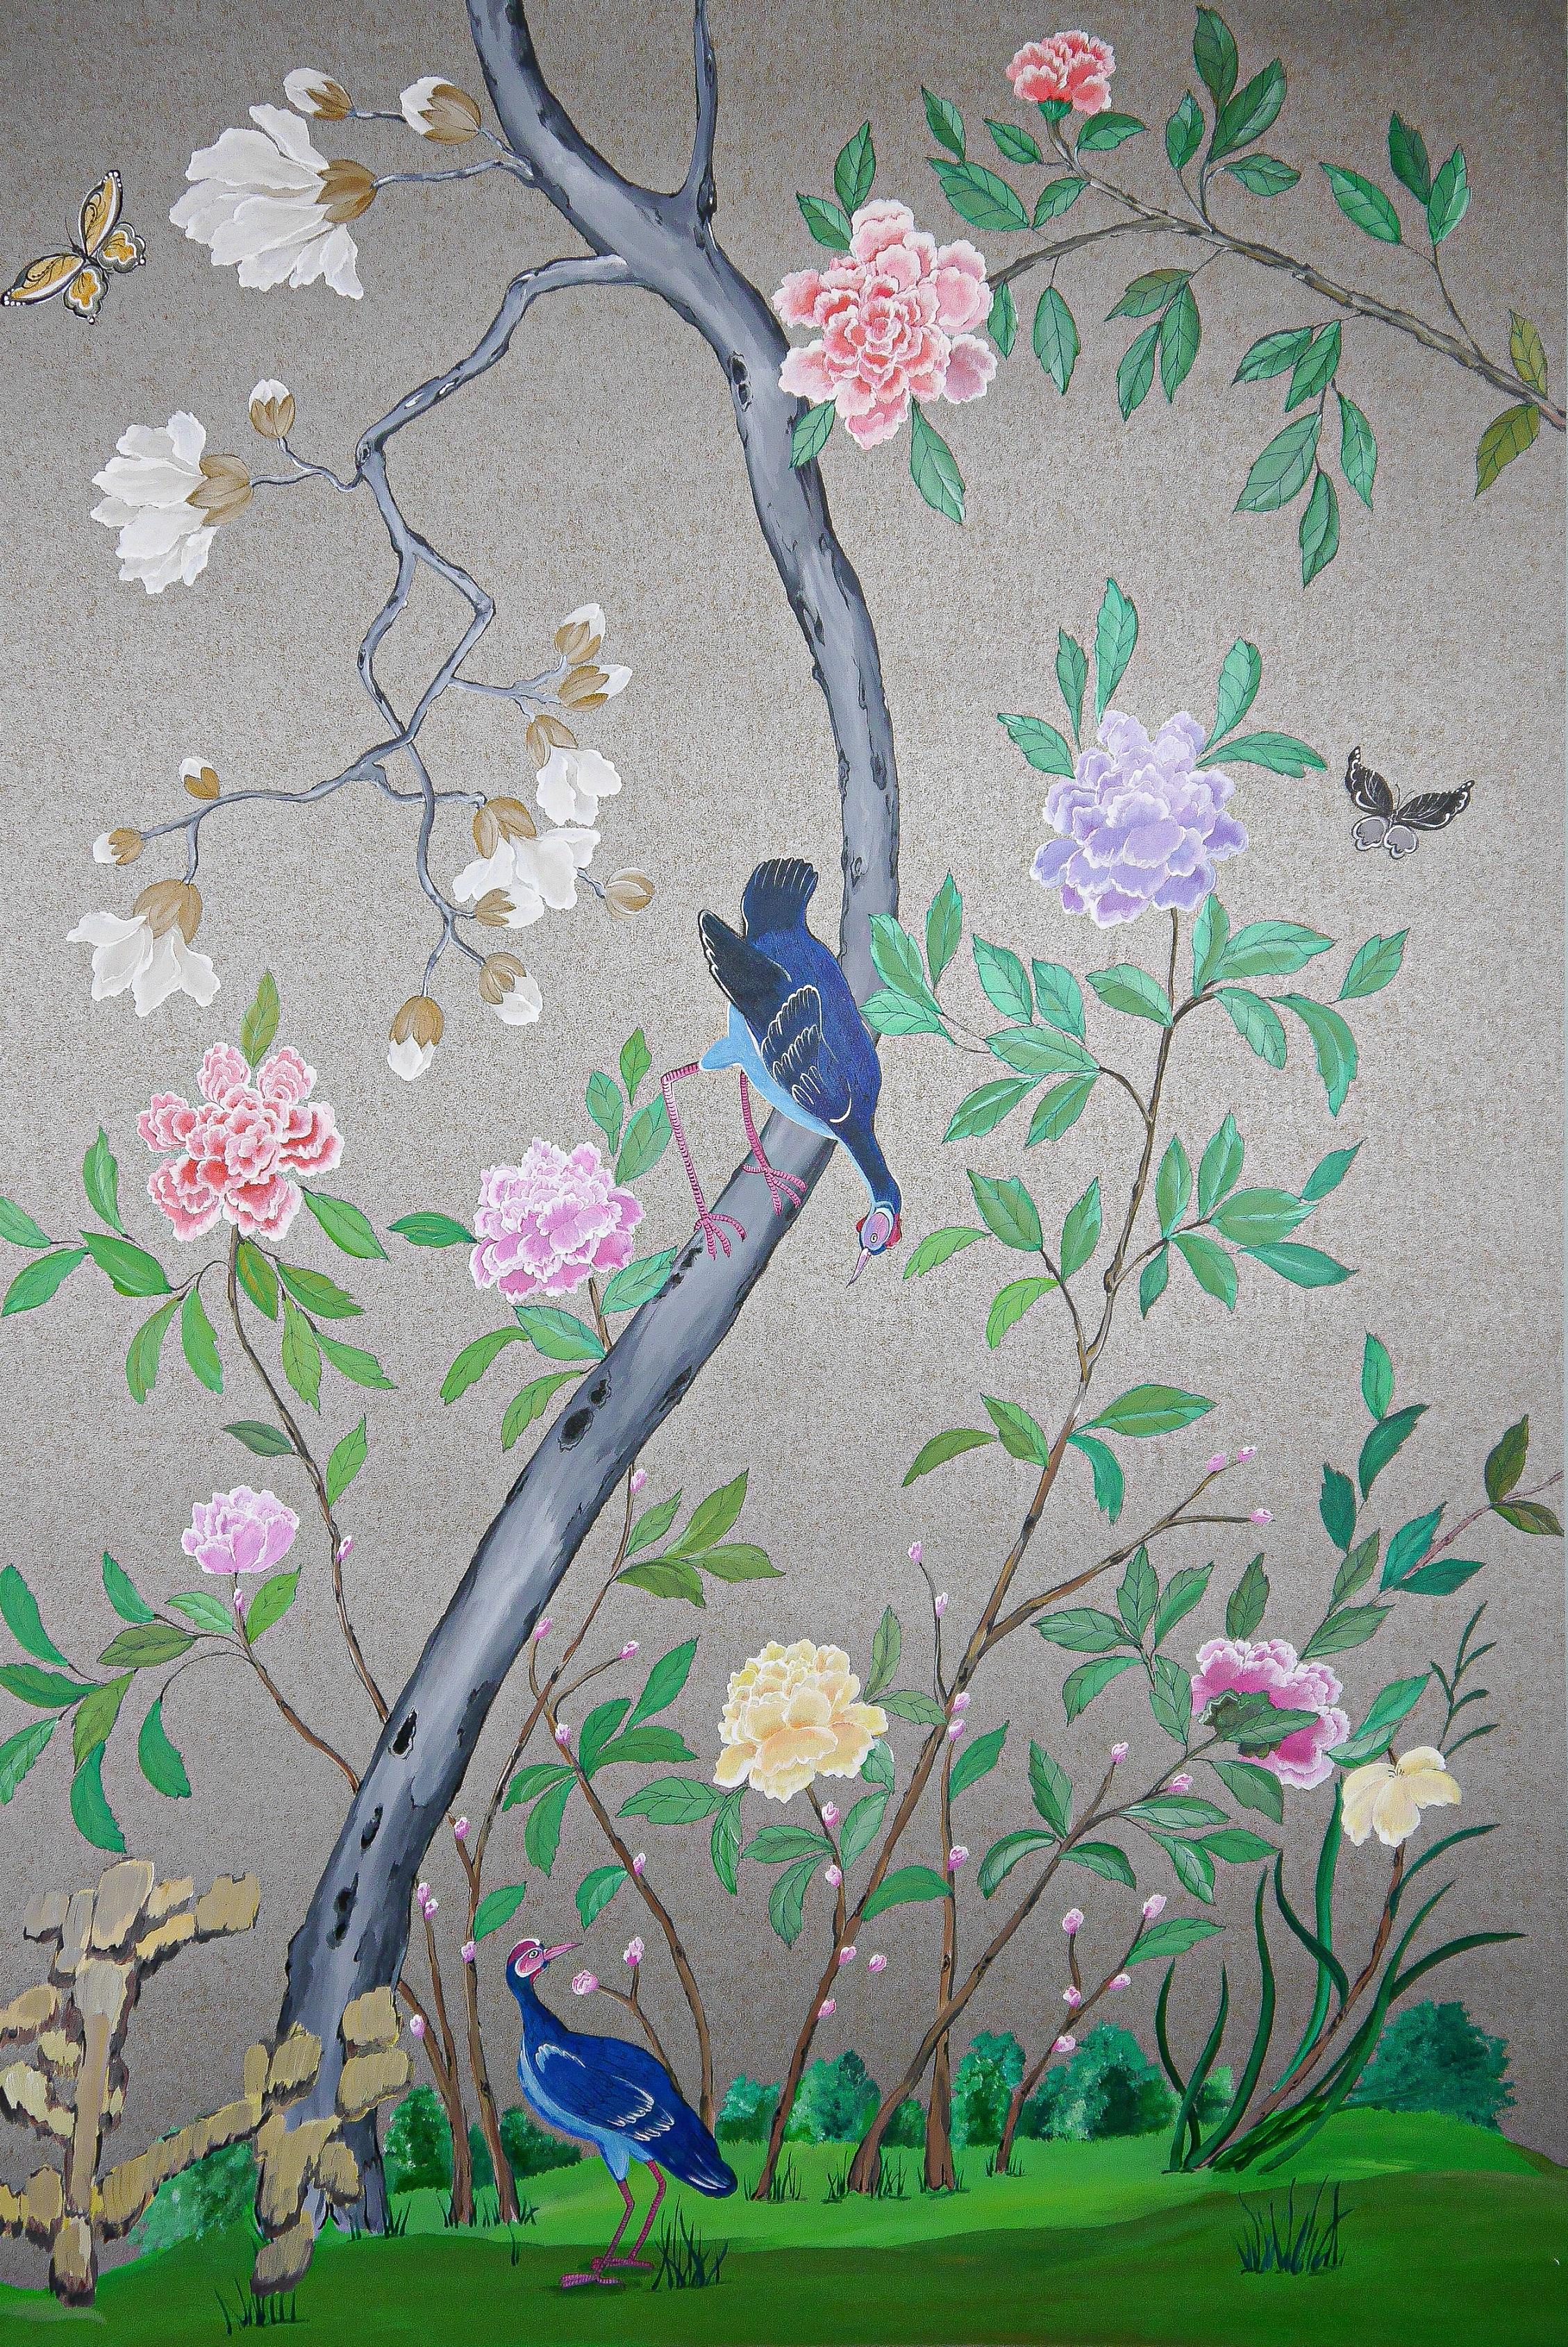 Berkeley : une reproduction de panneaux de papier peint chinois, datés de 1790-1810, en stock. Une suite de 24 panneaux de papier peint d'exportation chinois a été vendue chez Sotheby's pour 137500 GBP.

Il s'agit d'une commande personnalisée pour